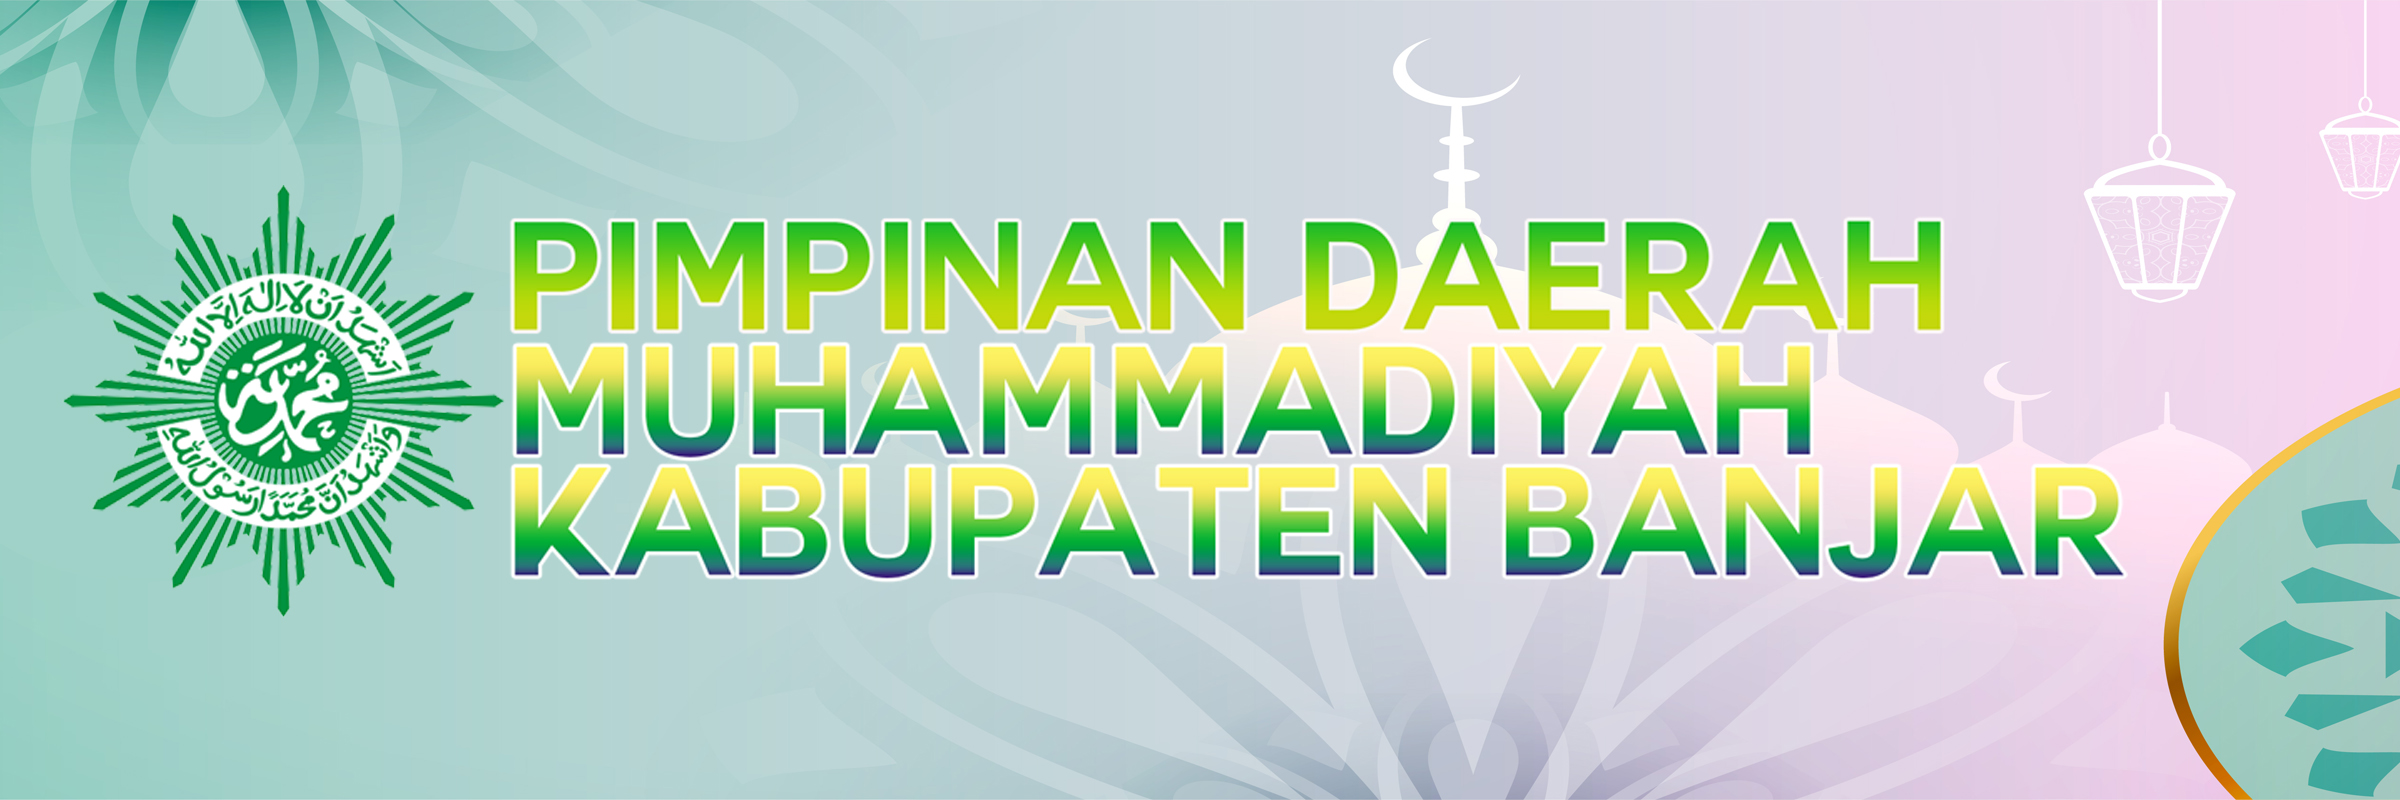 Majelis Tabligh PD Muhammadiyah Kabupaten Banjar